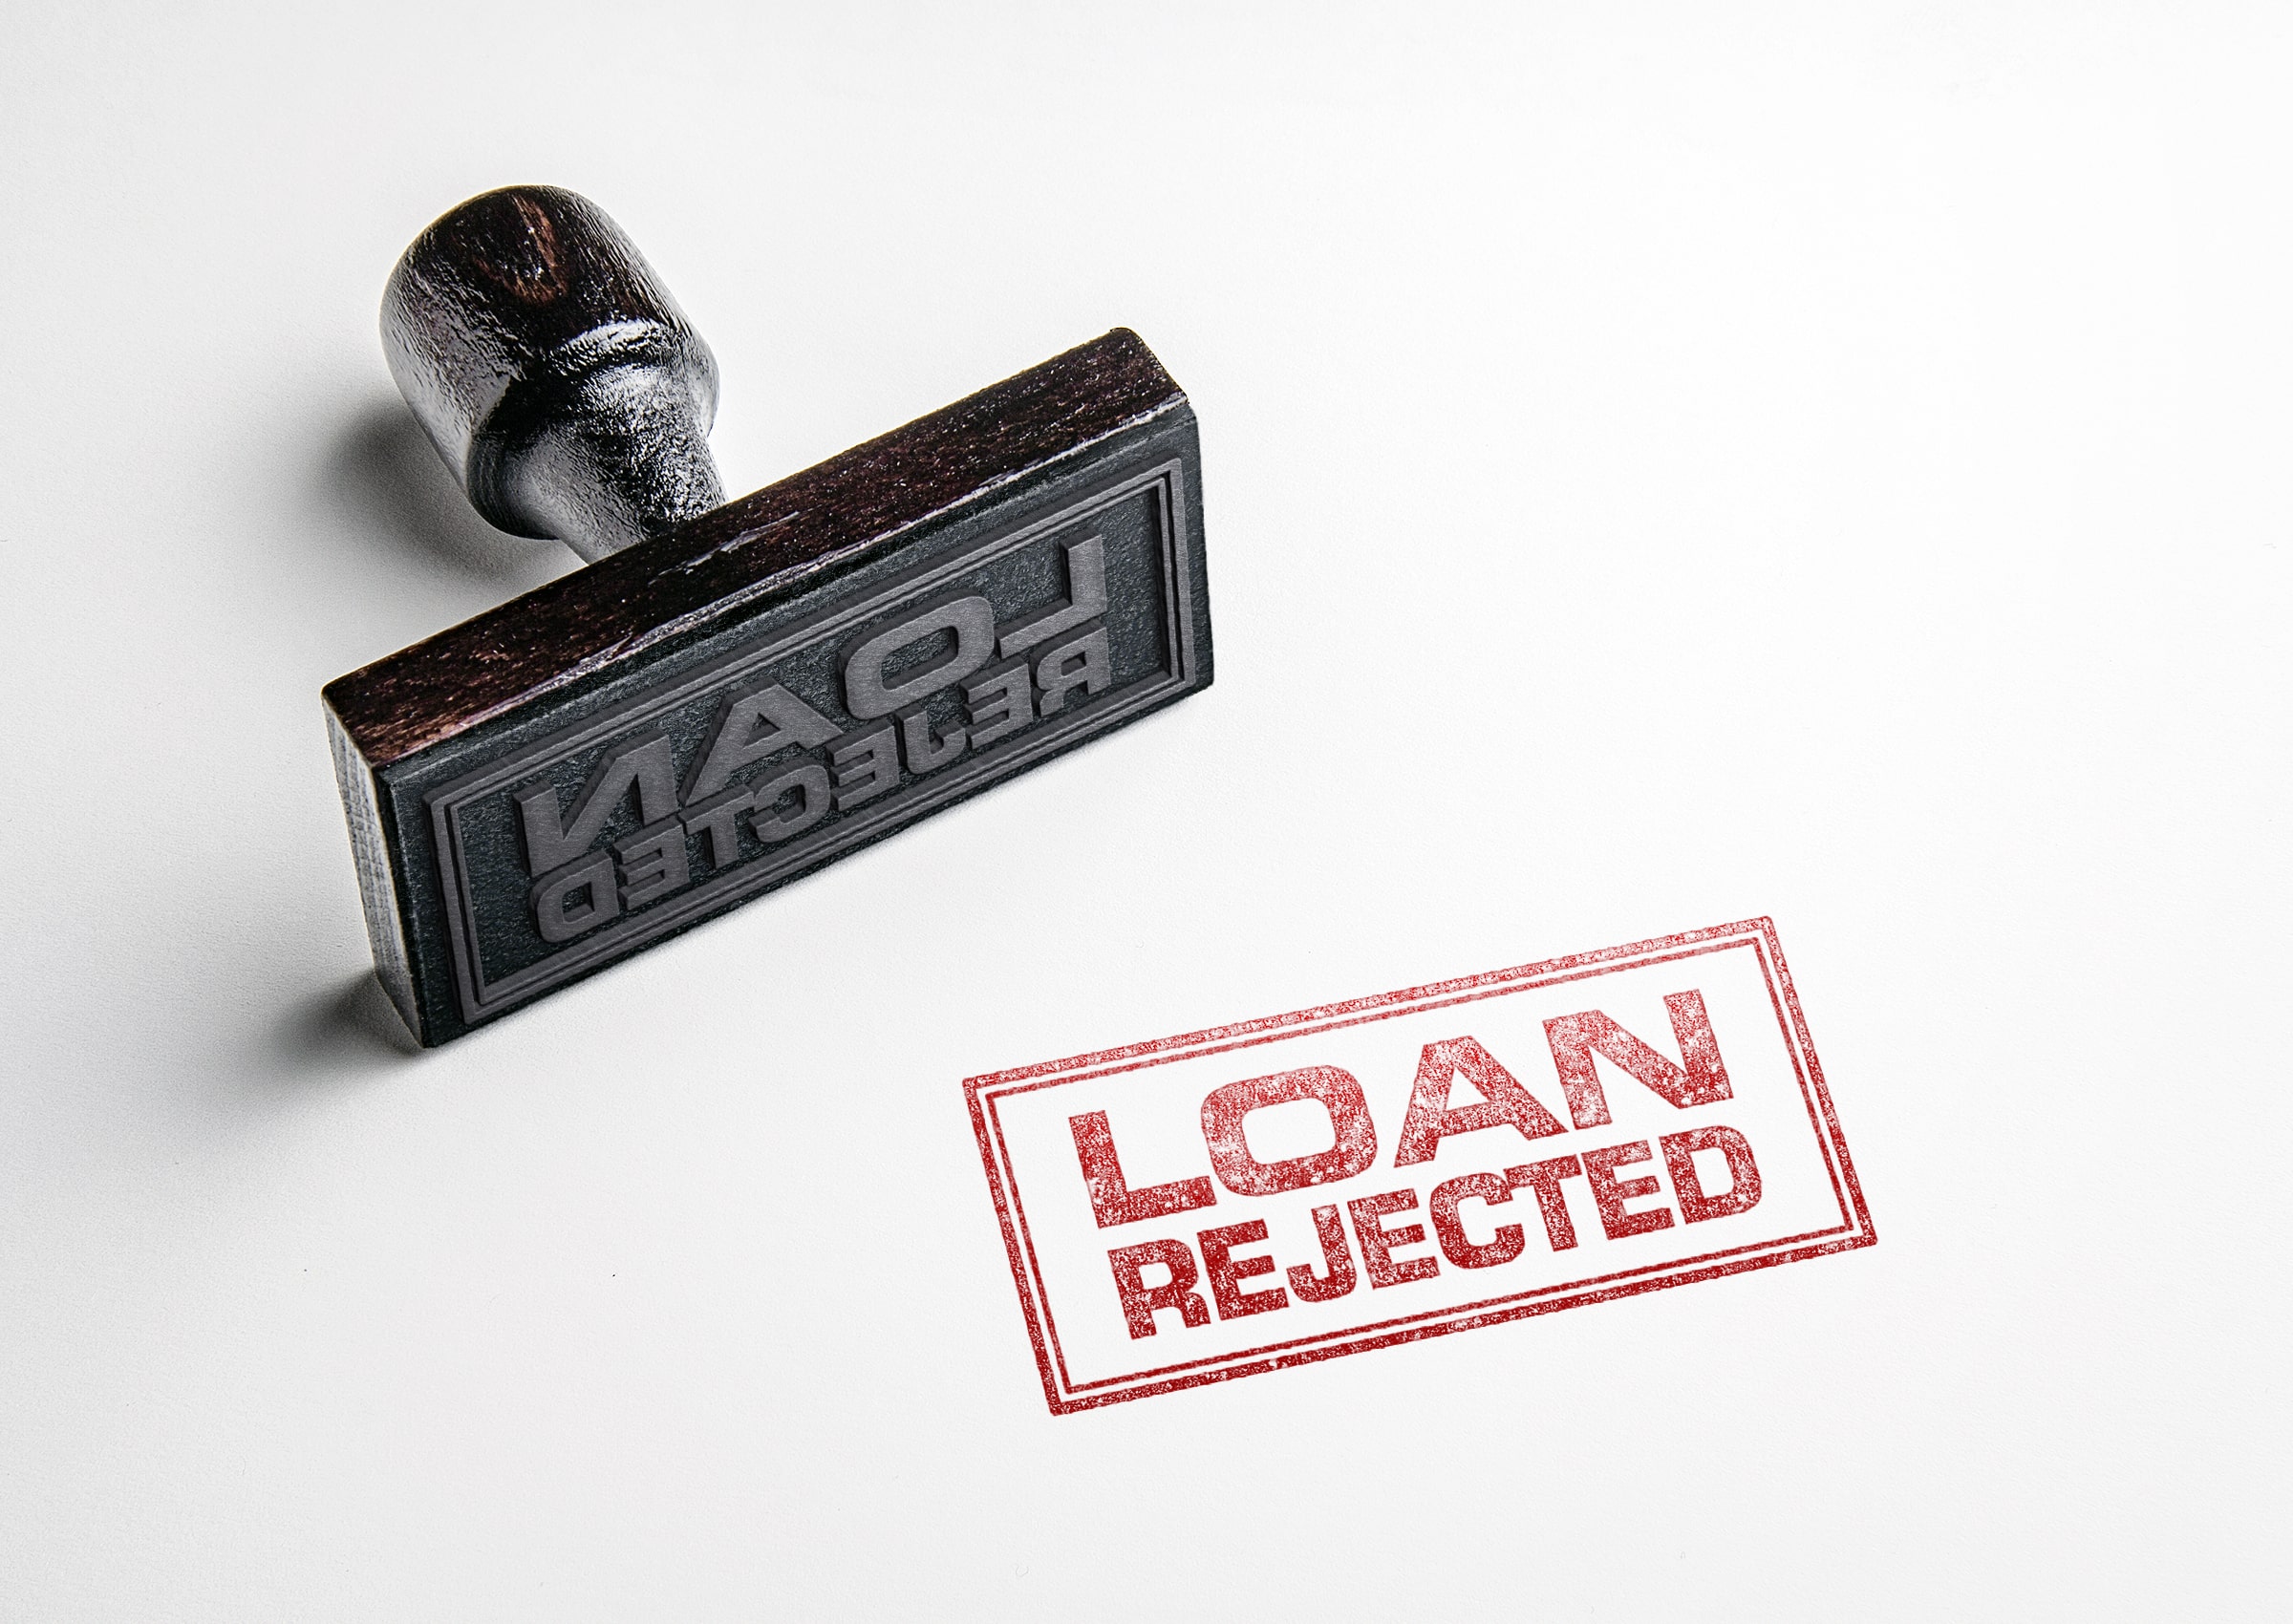 loan rejected